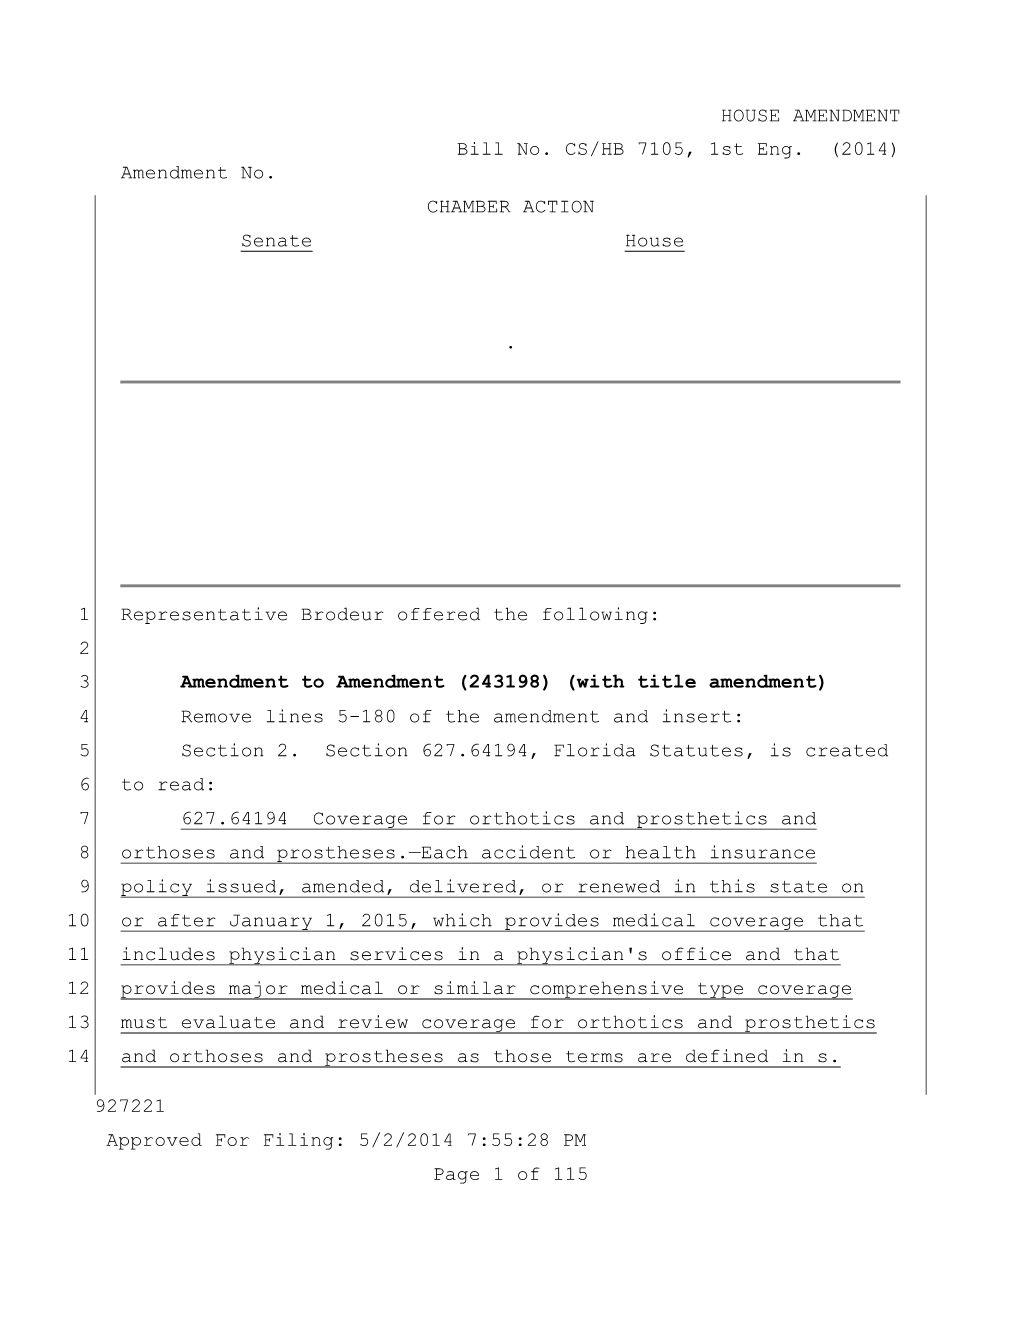 HOUSE AMENDMENT Bill No. CS/HB 7105, 1St Eng. (2014) Amendment No